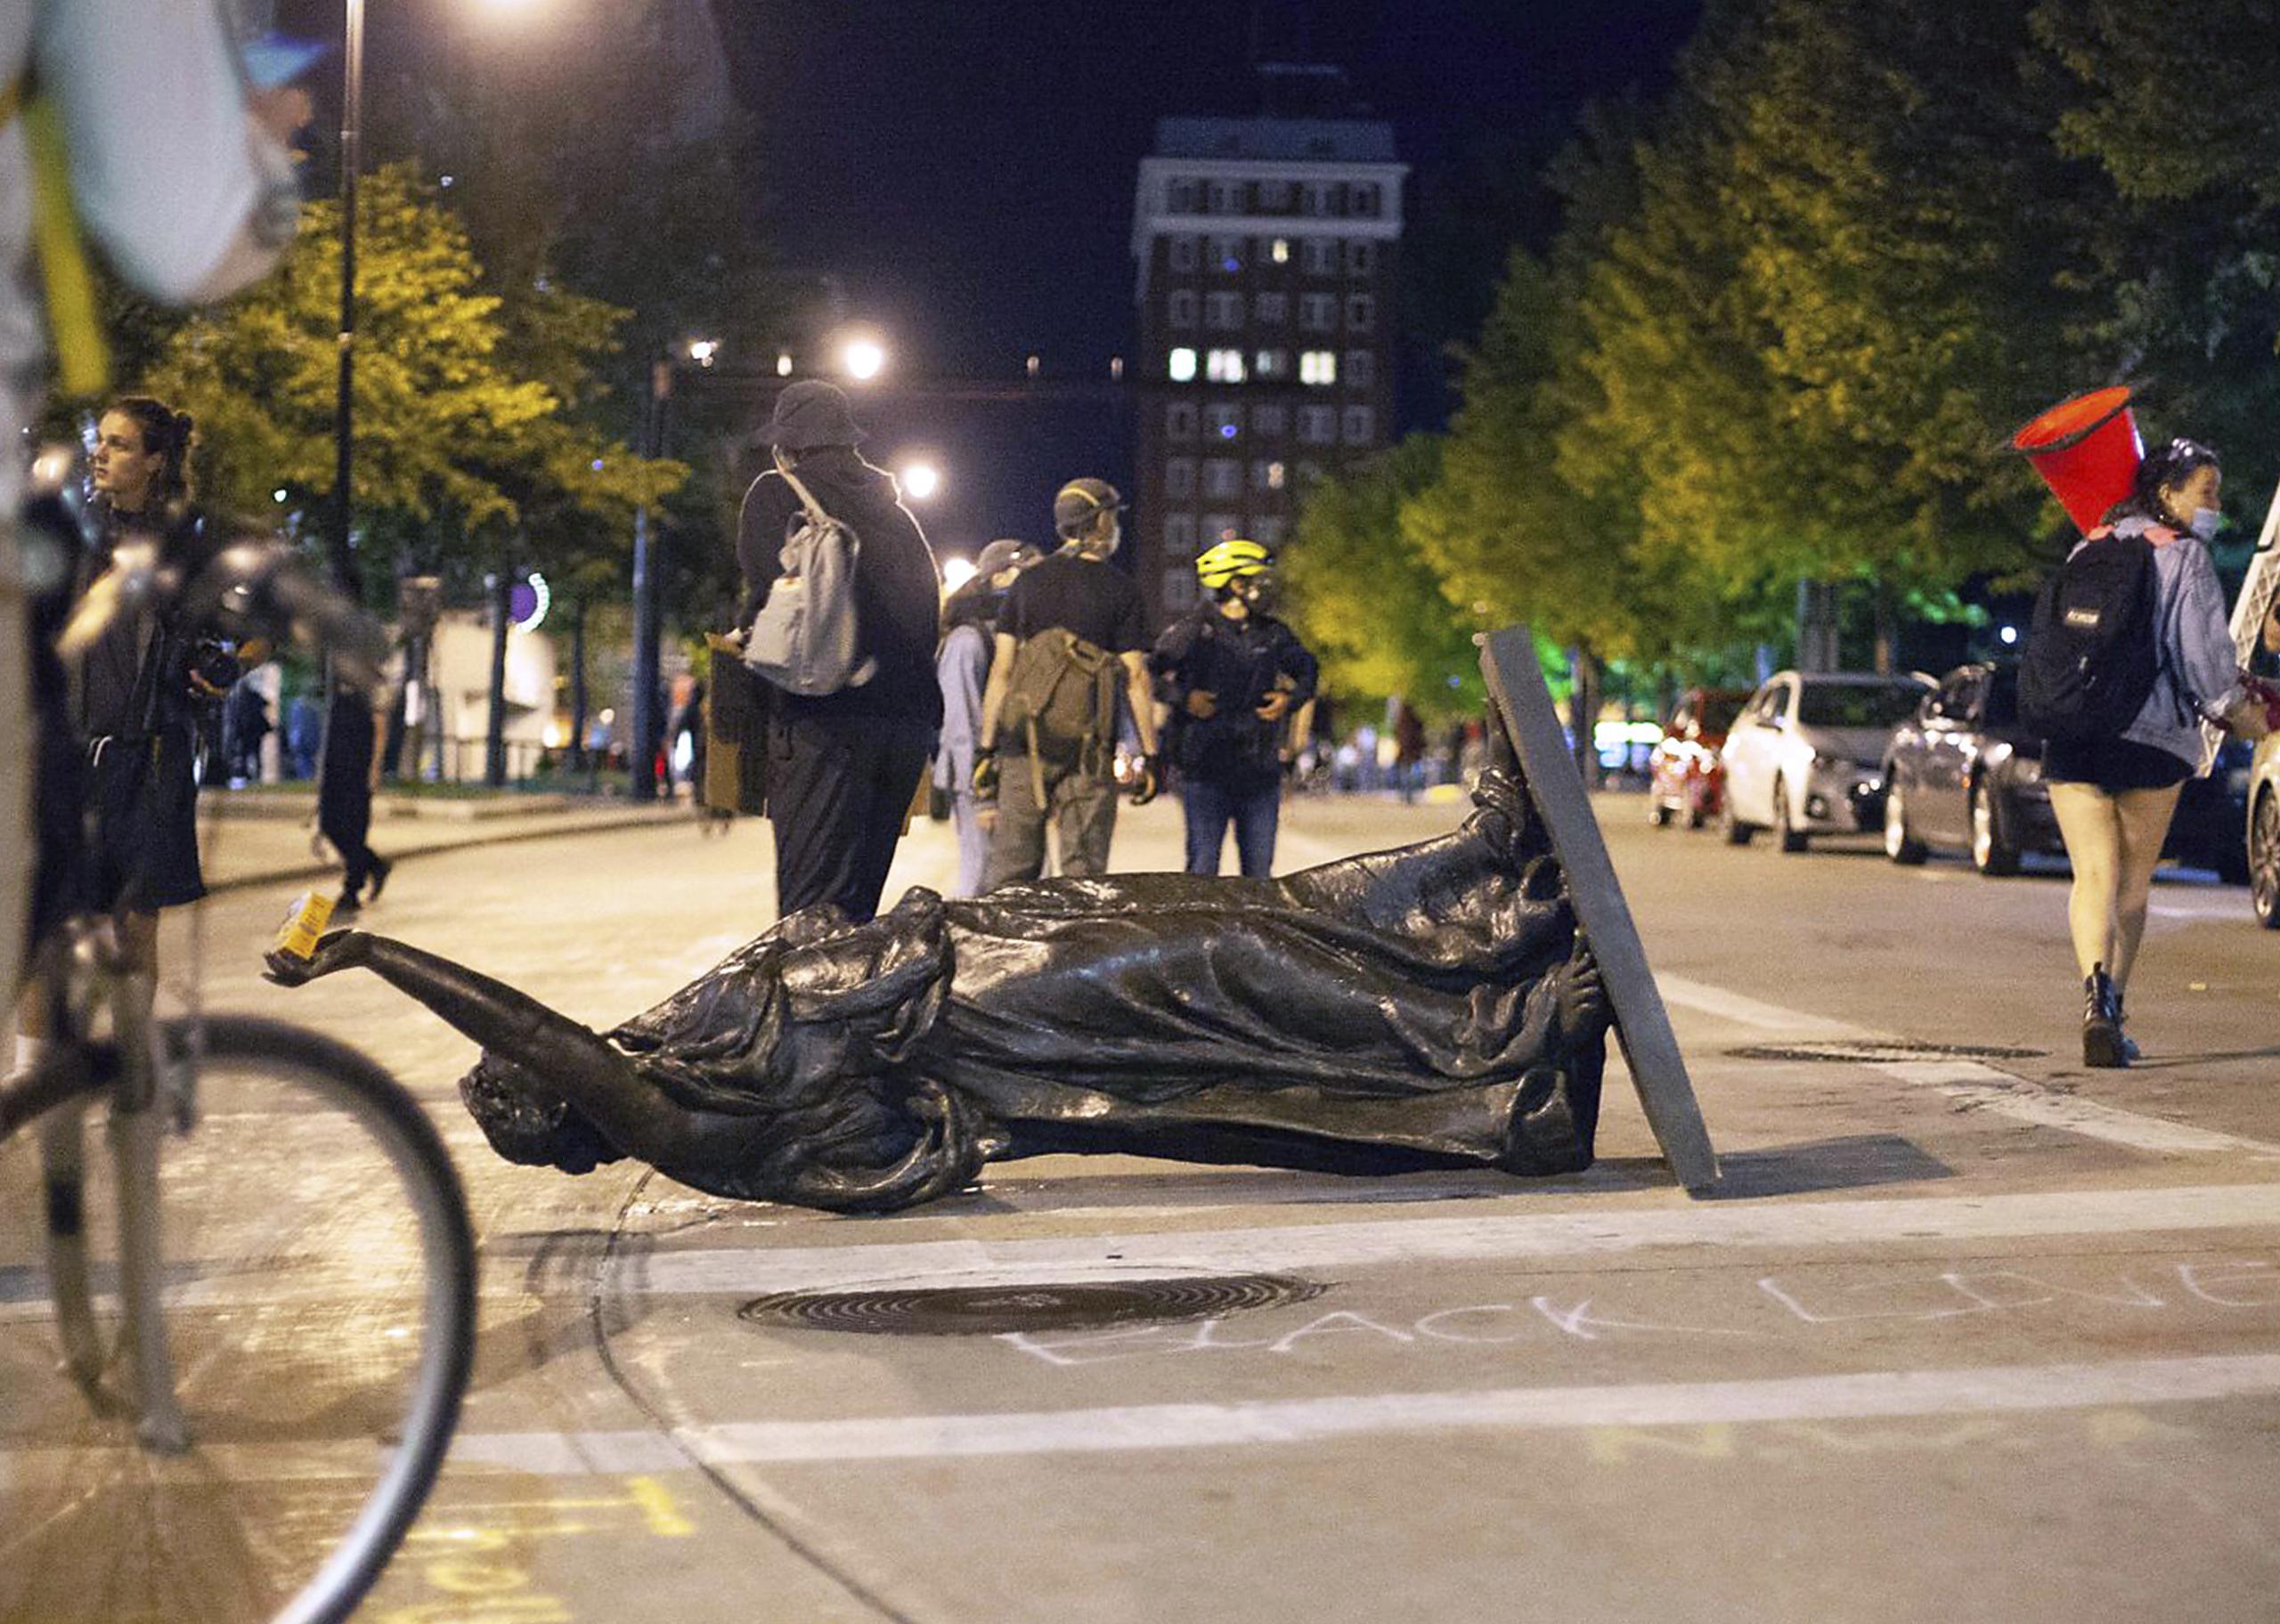 Una estatua derribada por manifestantes durante una protesta en Madison, Wisconsin, la noche del martes 23 de junio de 2020.